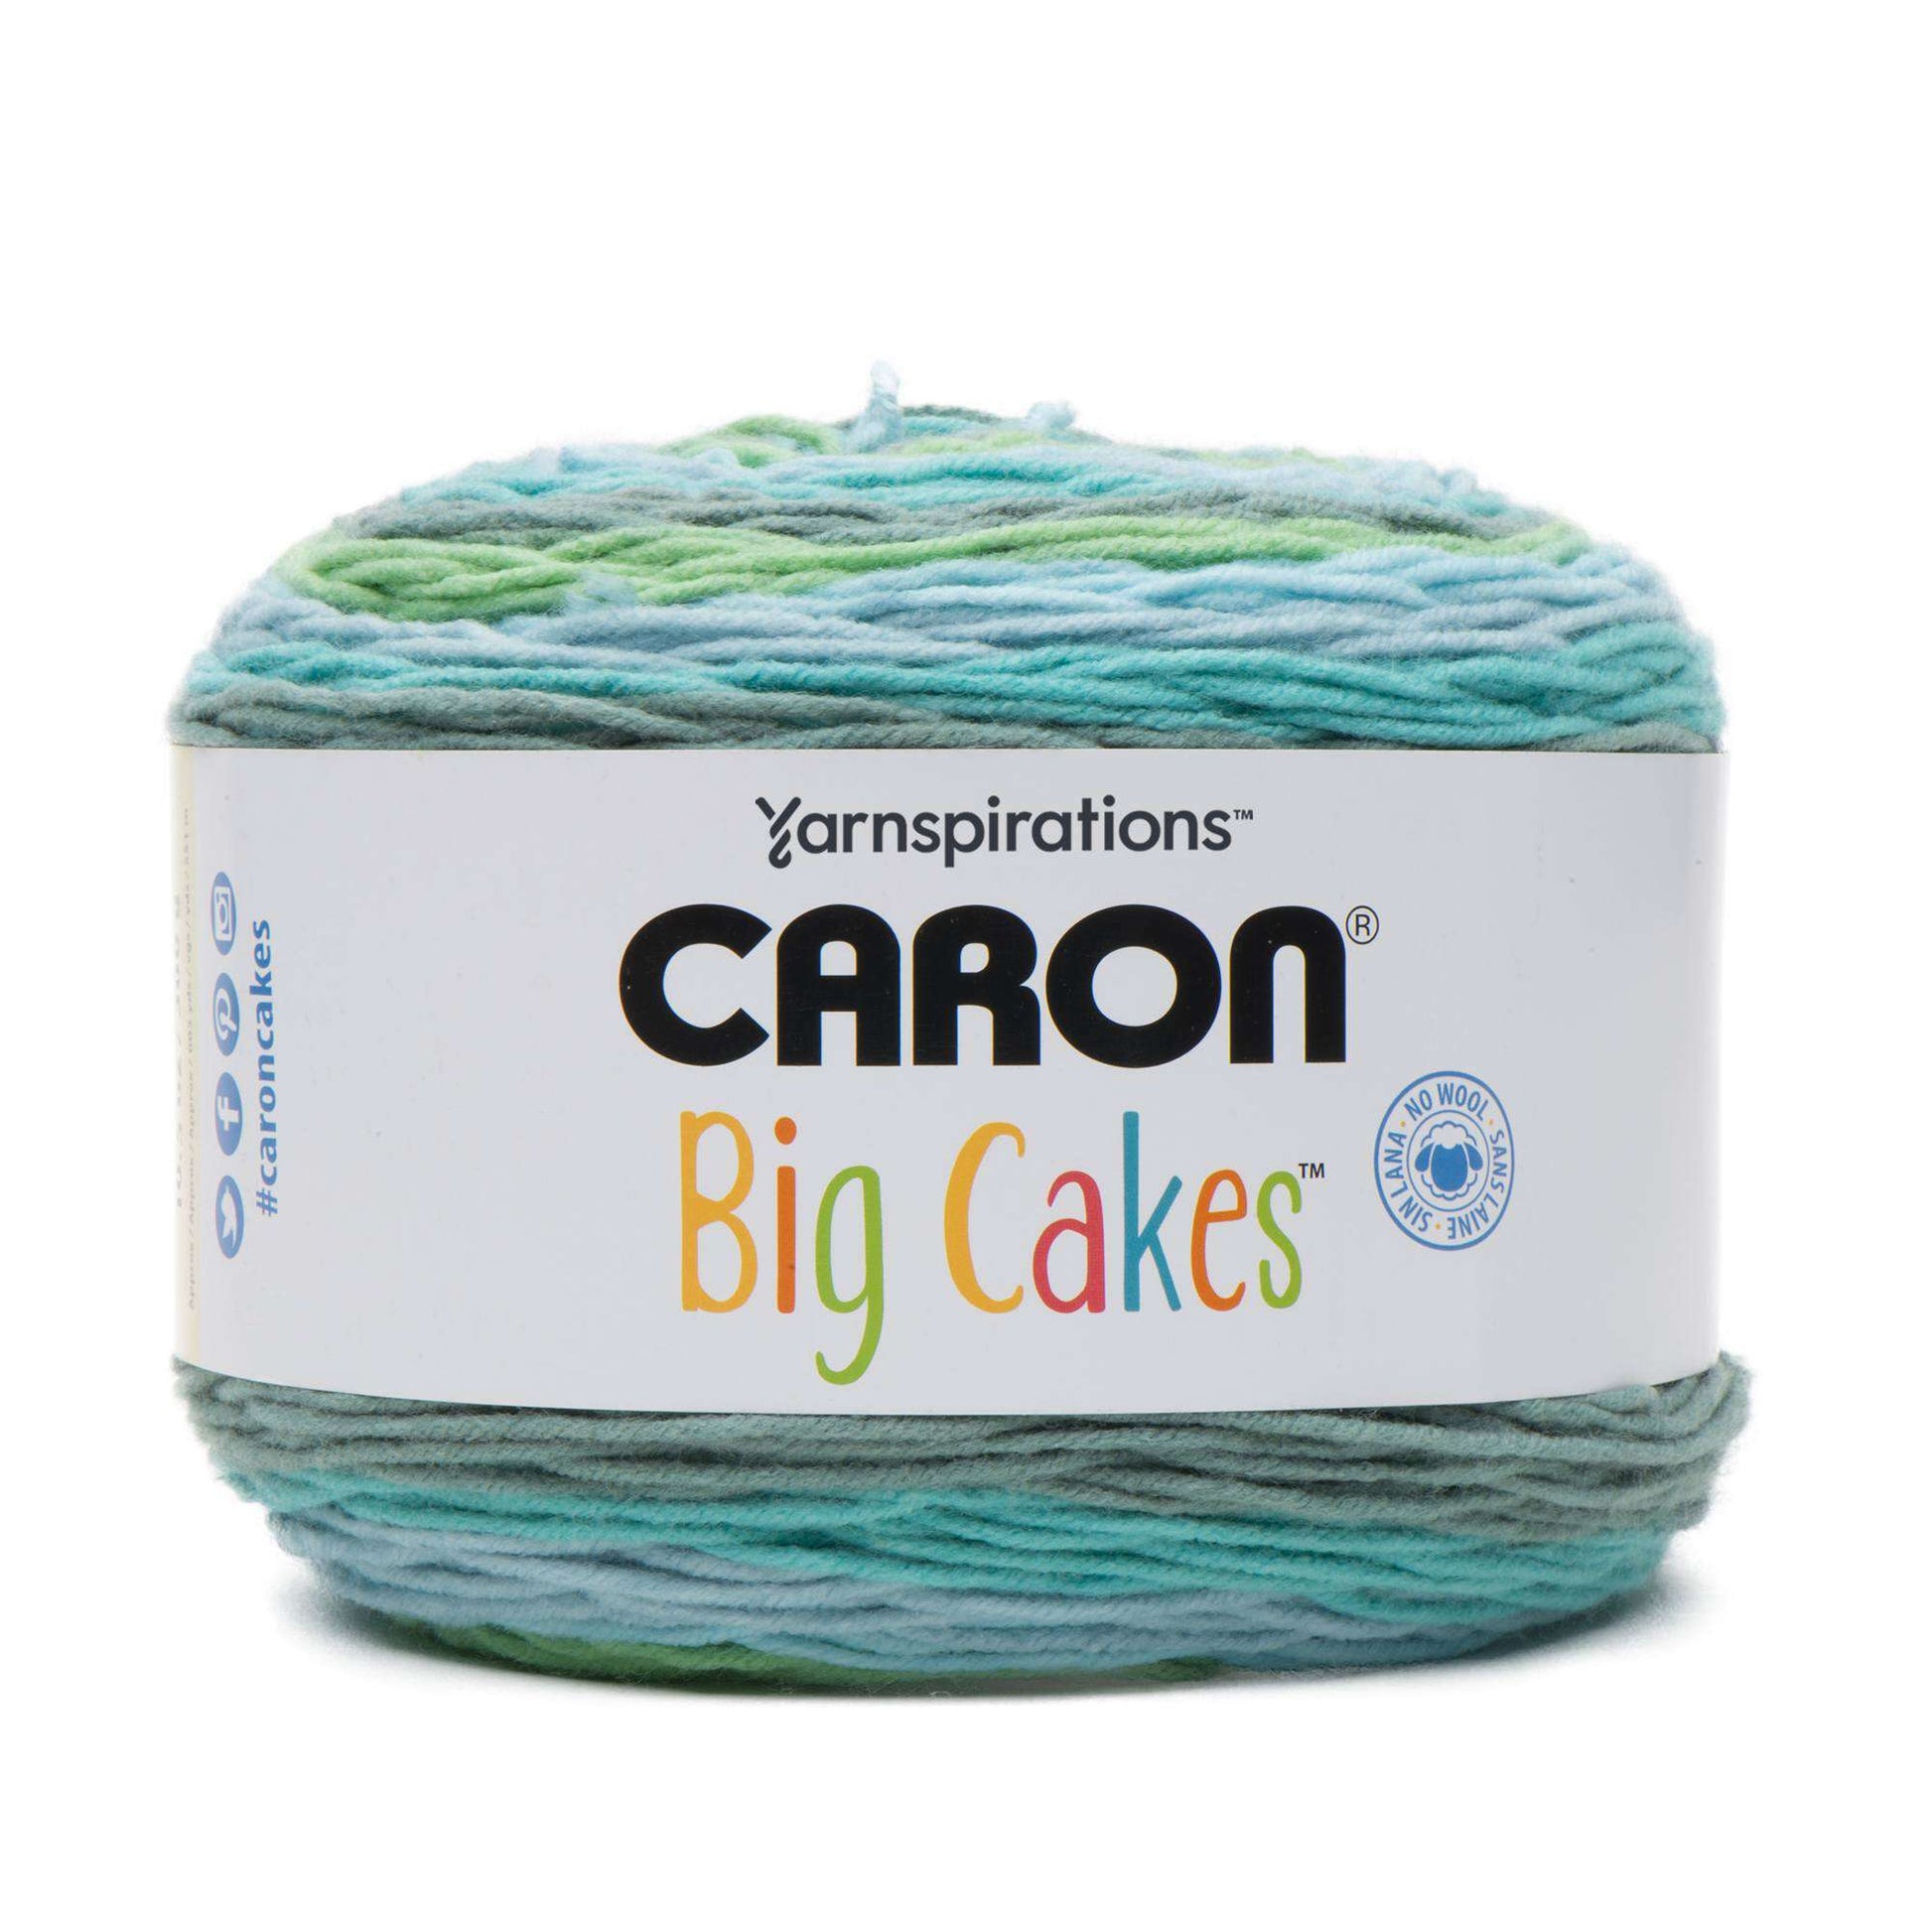  Caron Big Cakes Self Striping Yarn ~ 603 yd/551 m / 10.5oz/300  g Each (Toffee Brickle)